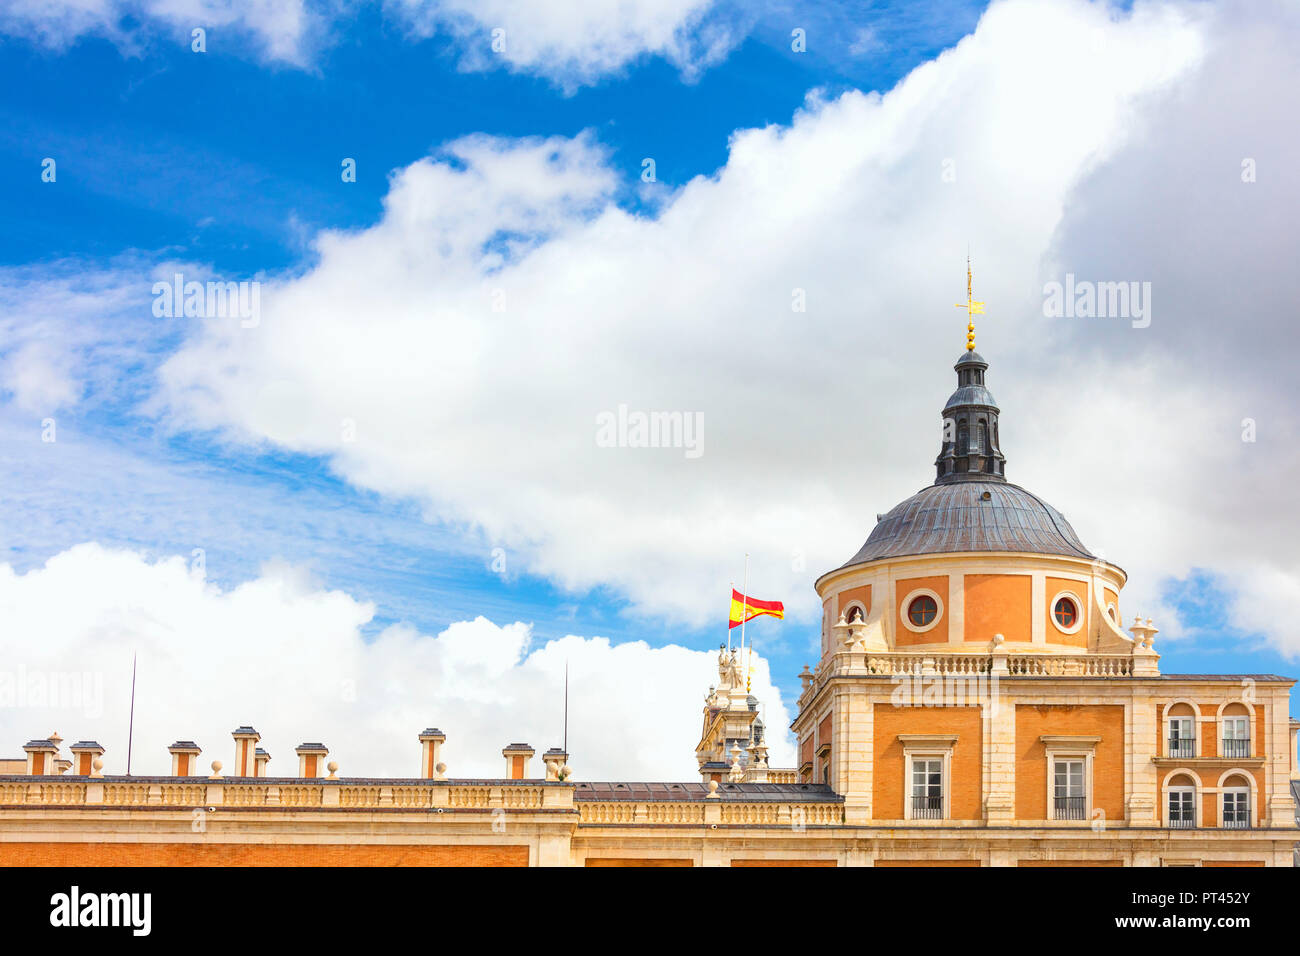 Et sur le toit du dôme du Palais Royal d'Aranjuez (Palacio Real), Communauté de Madrid, Espagne Banque D'Images